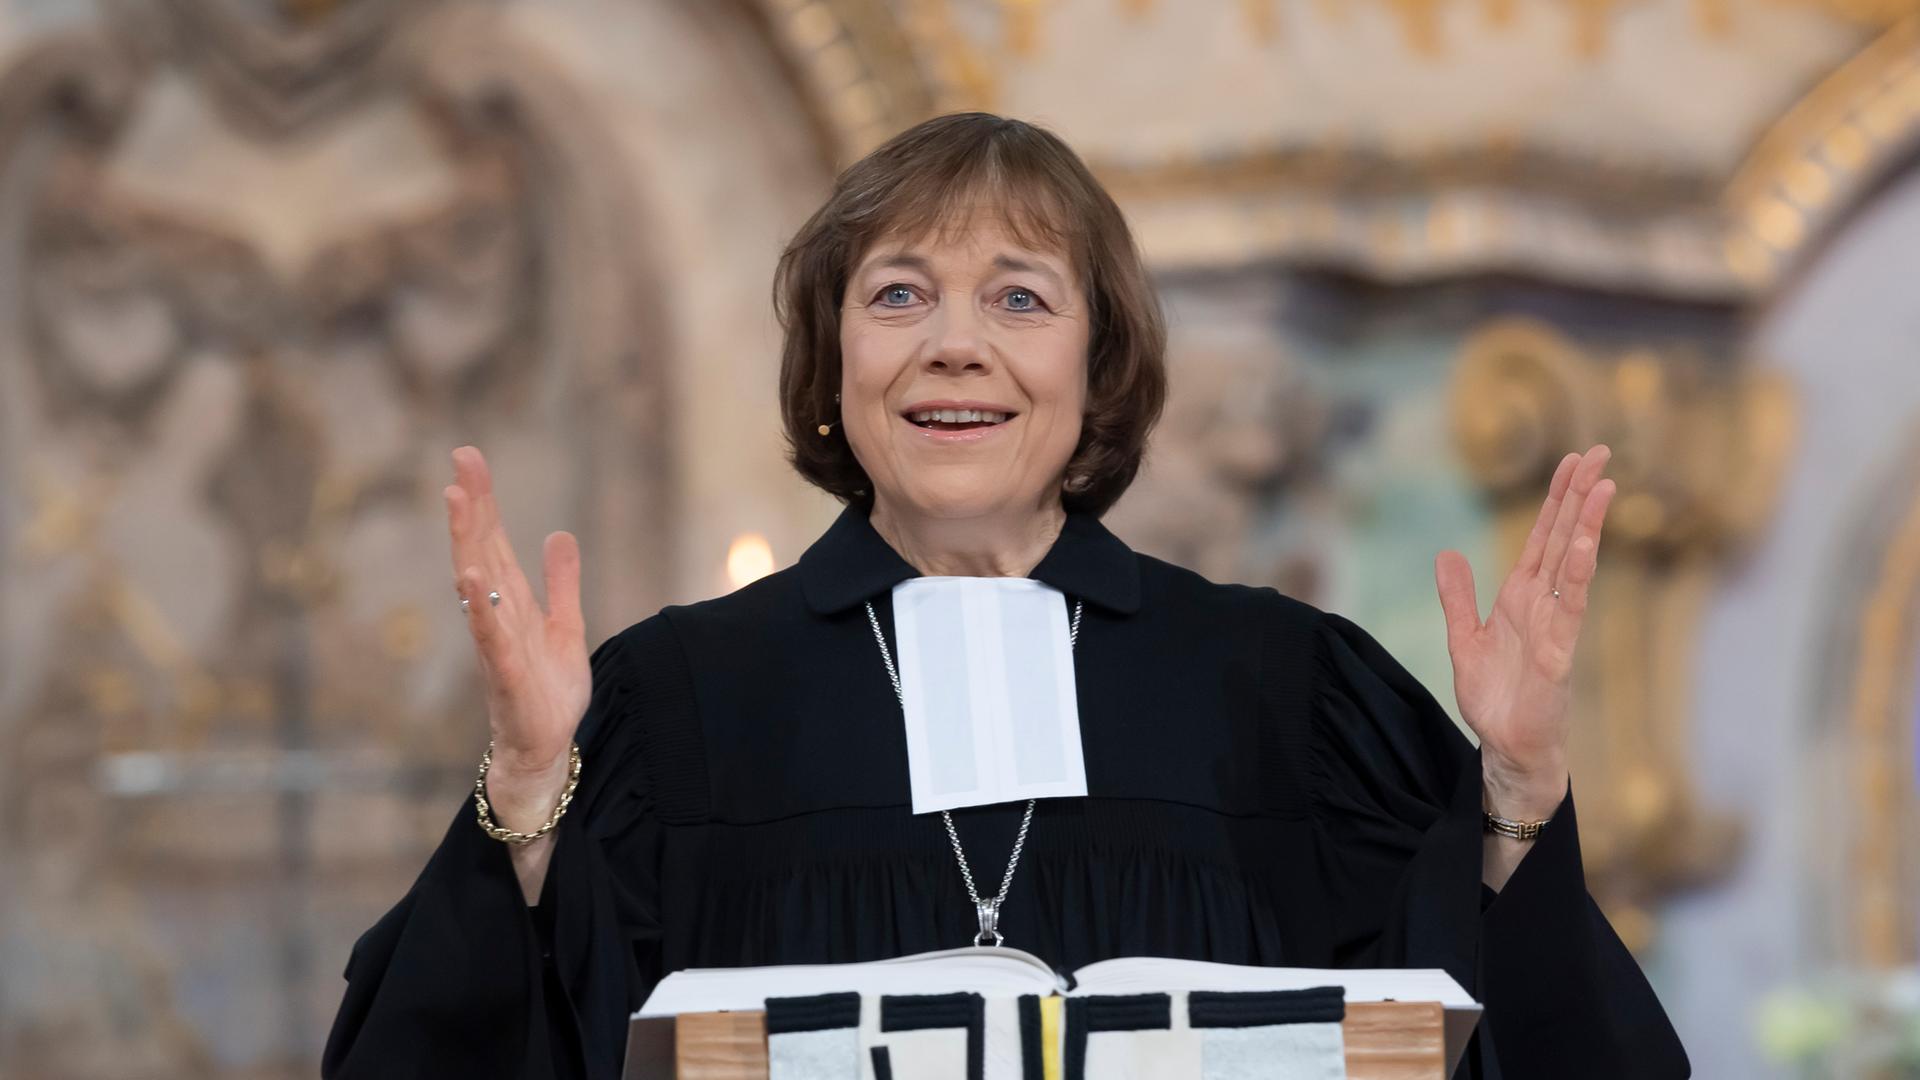 Präses Annette Kurschus, Ratsvorsitzende der Evangelischen Kirche in Deutschland, predigt beim festlichen Gottesdienst zu Neujahr in der Dresdner Frauenkirche.